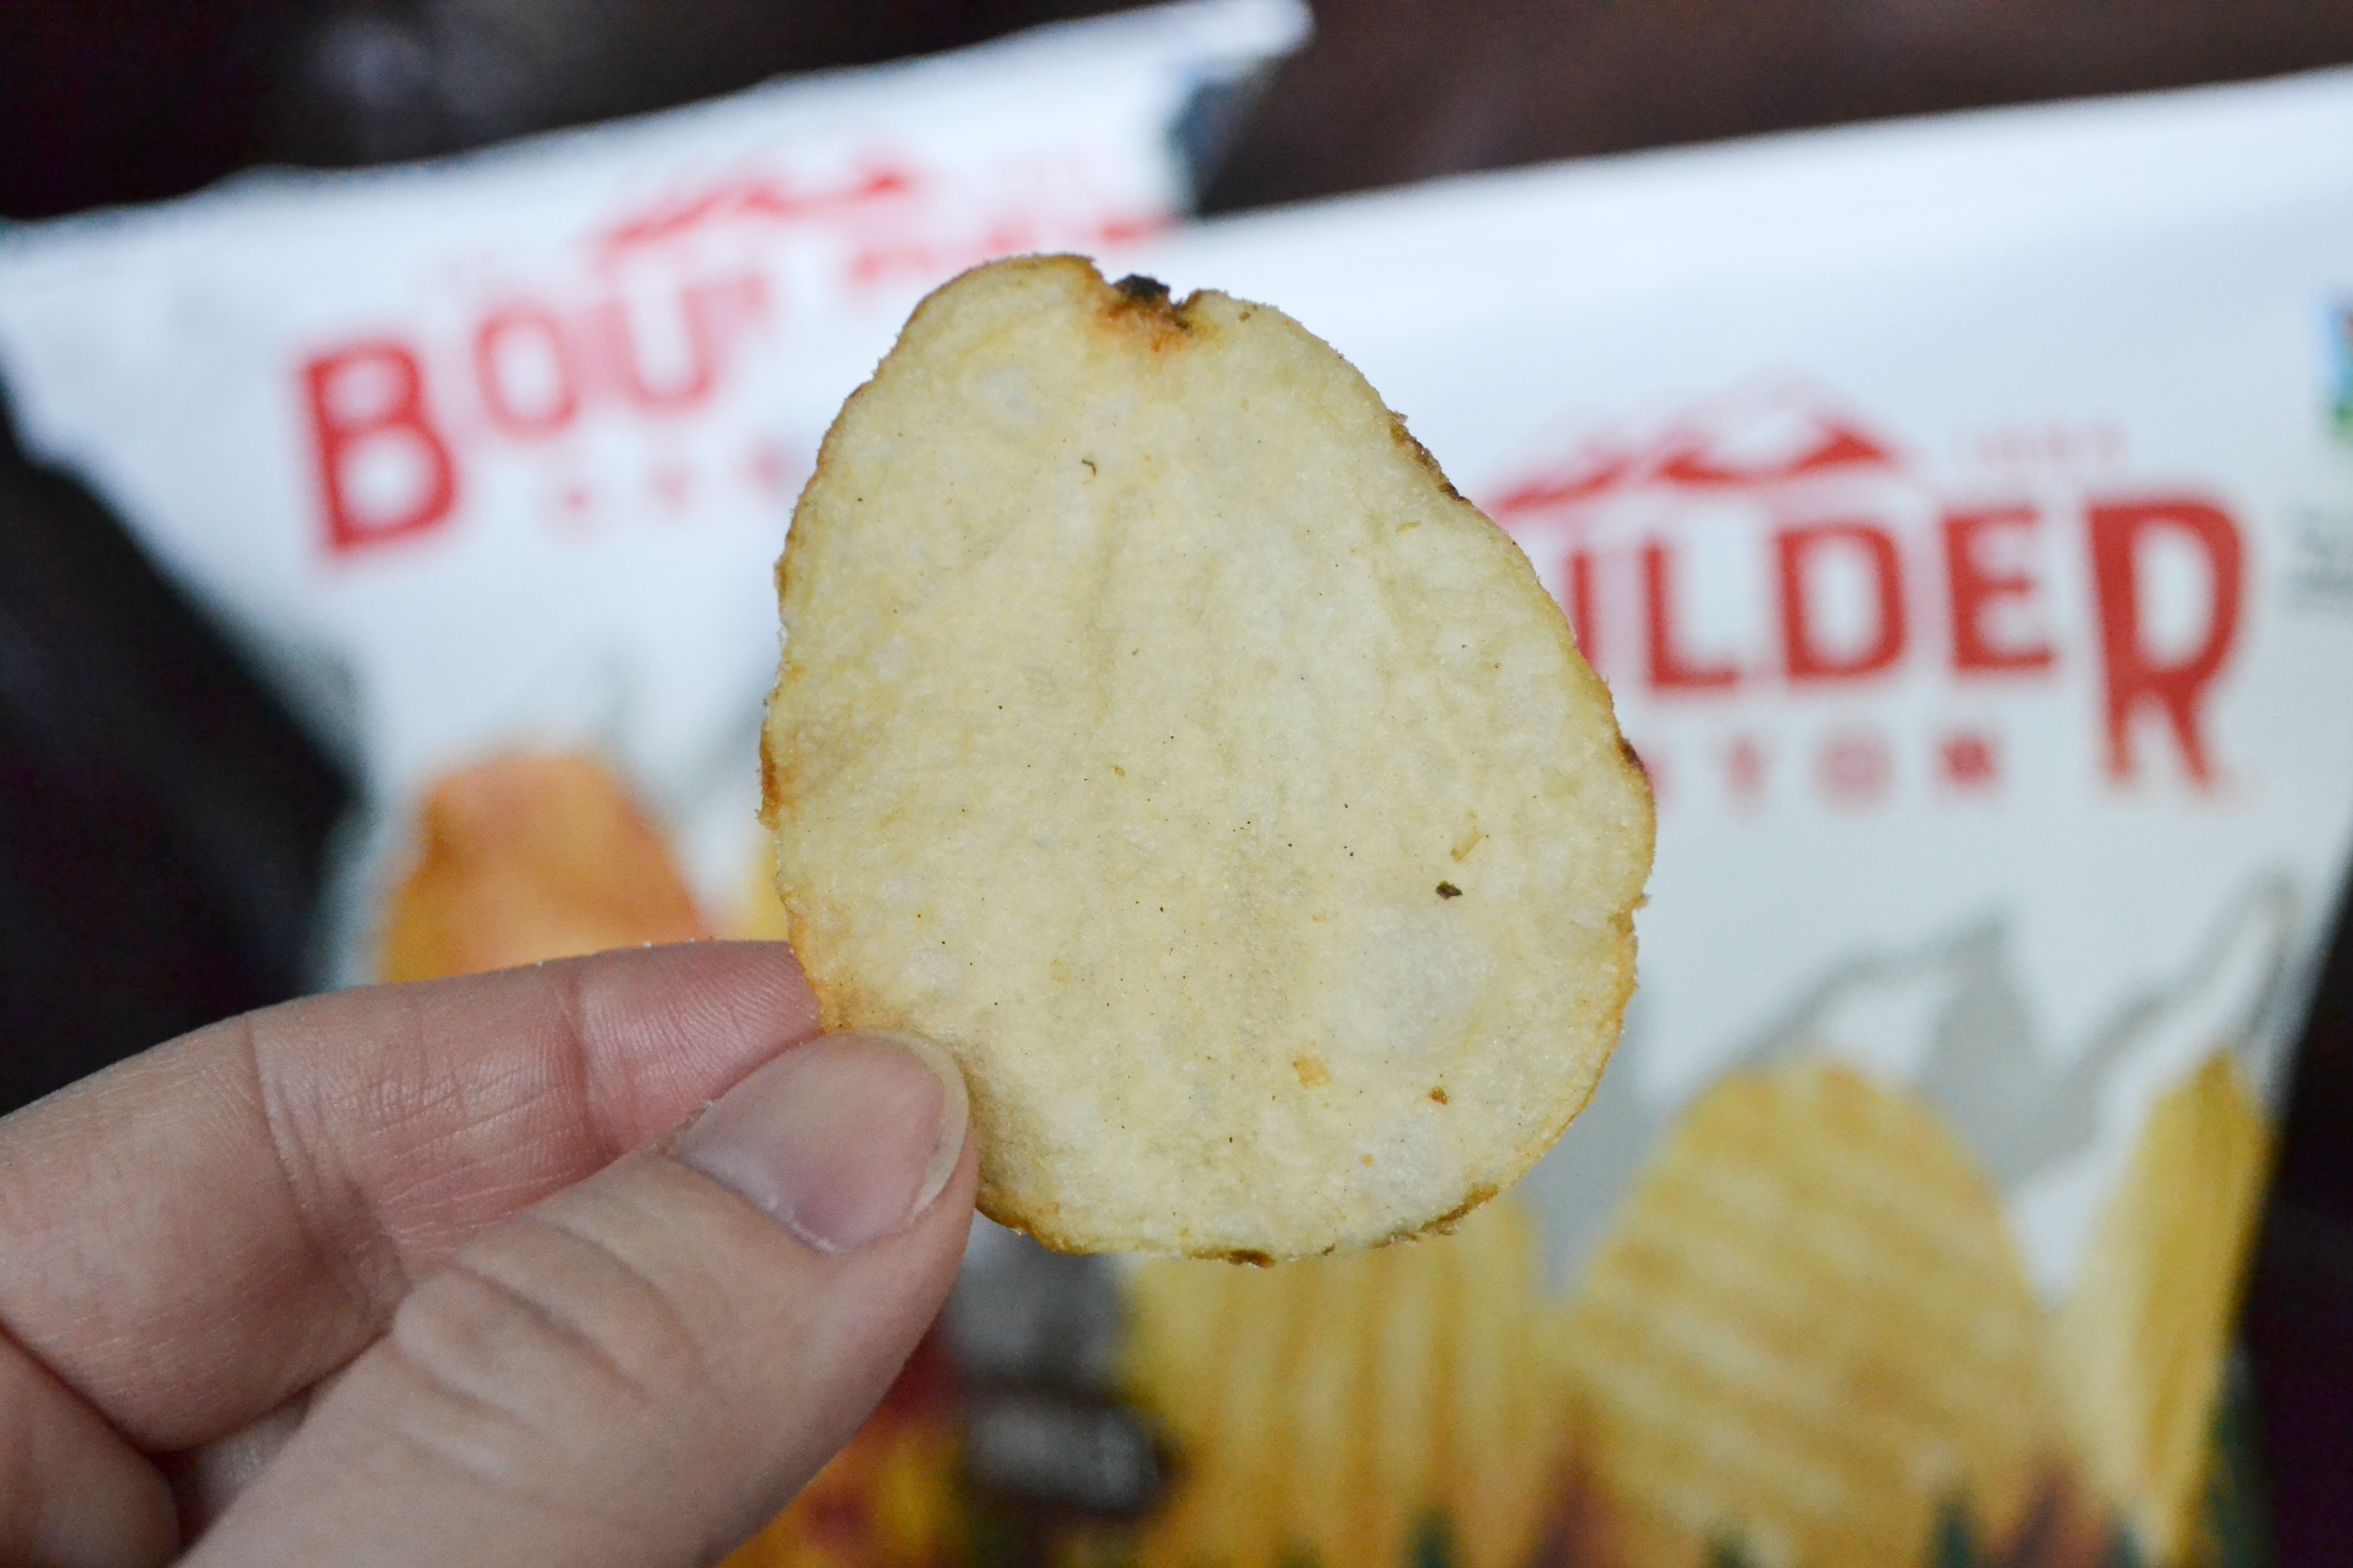 Boulder Chip